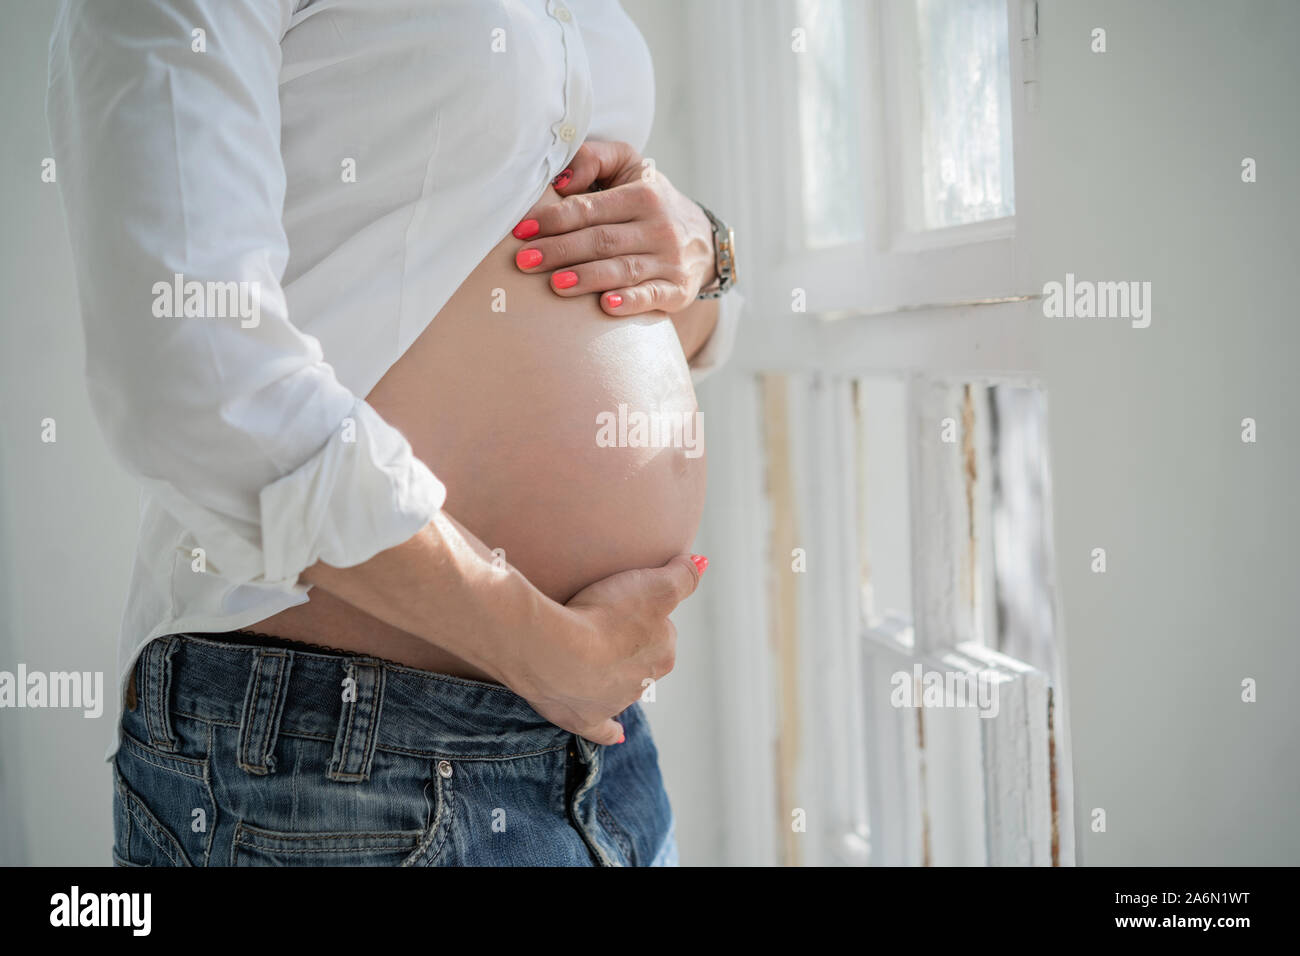 Bauch einer schwangeren Frau in der Nähe auf. Stockfoto